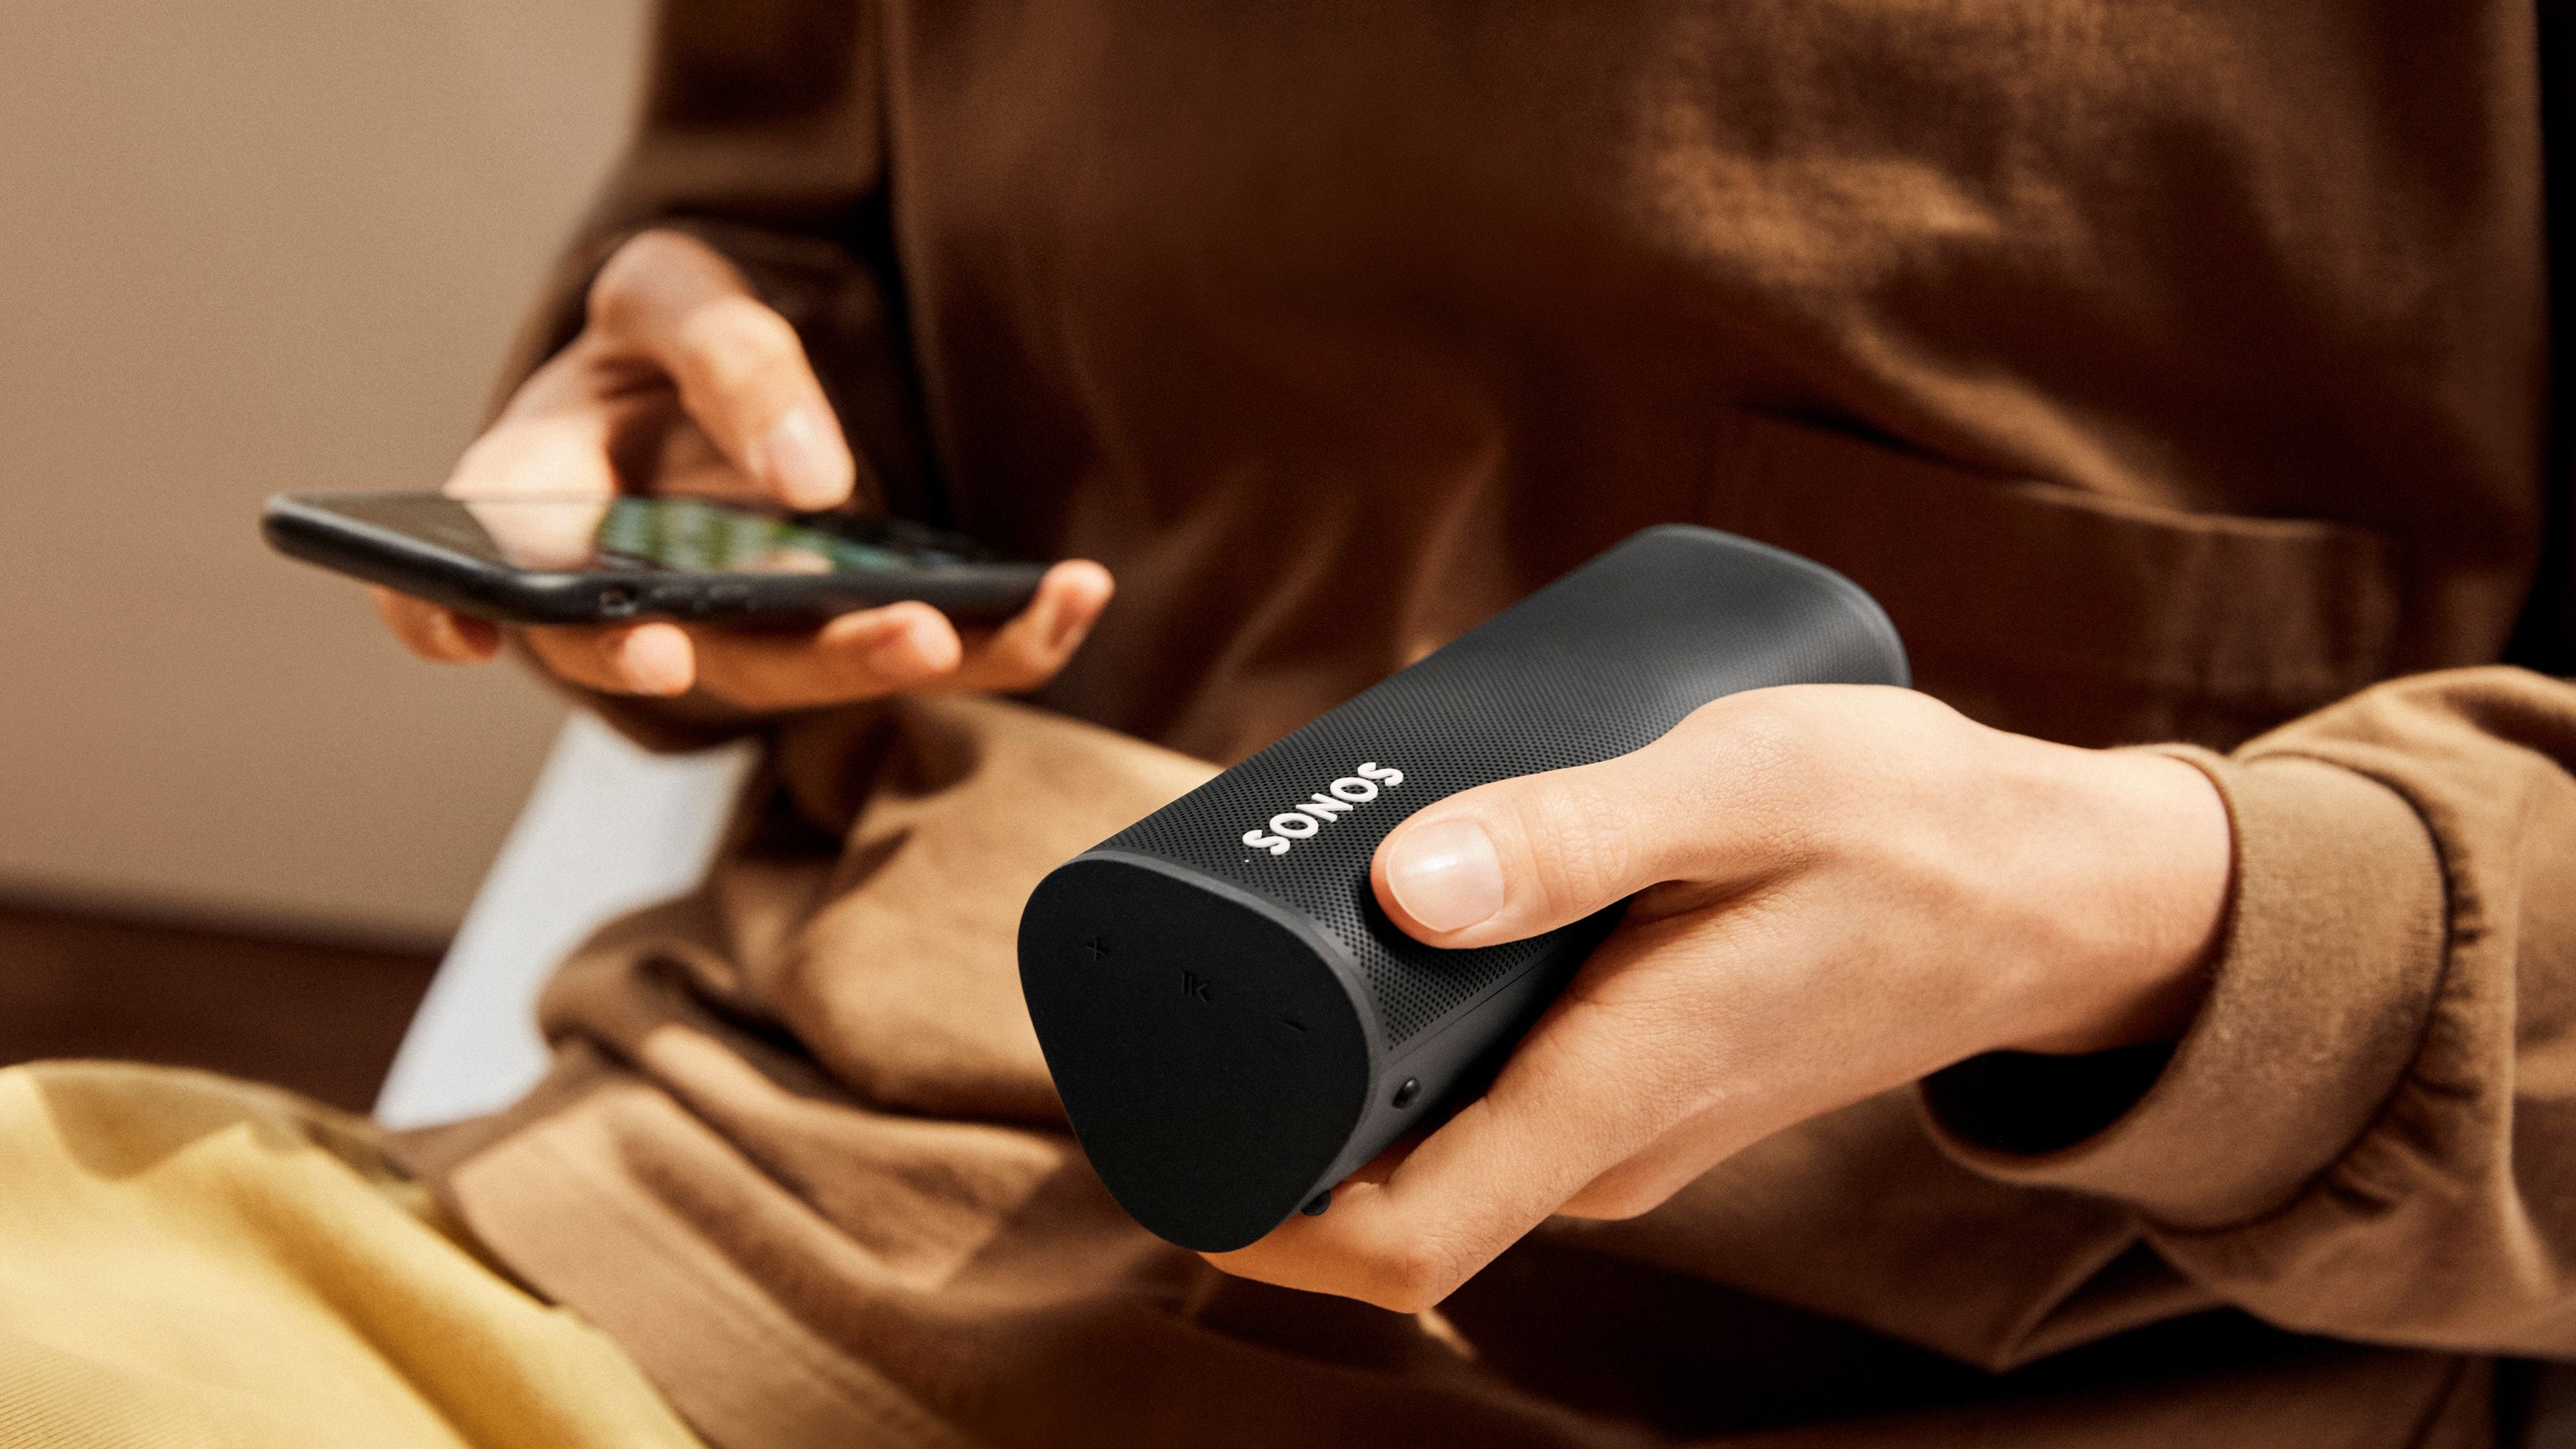 Głośniki Sonos obsługują jeszcze wyższą jakość dźwięku w serwisie Amazon Music